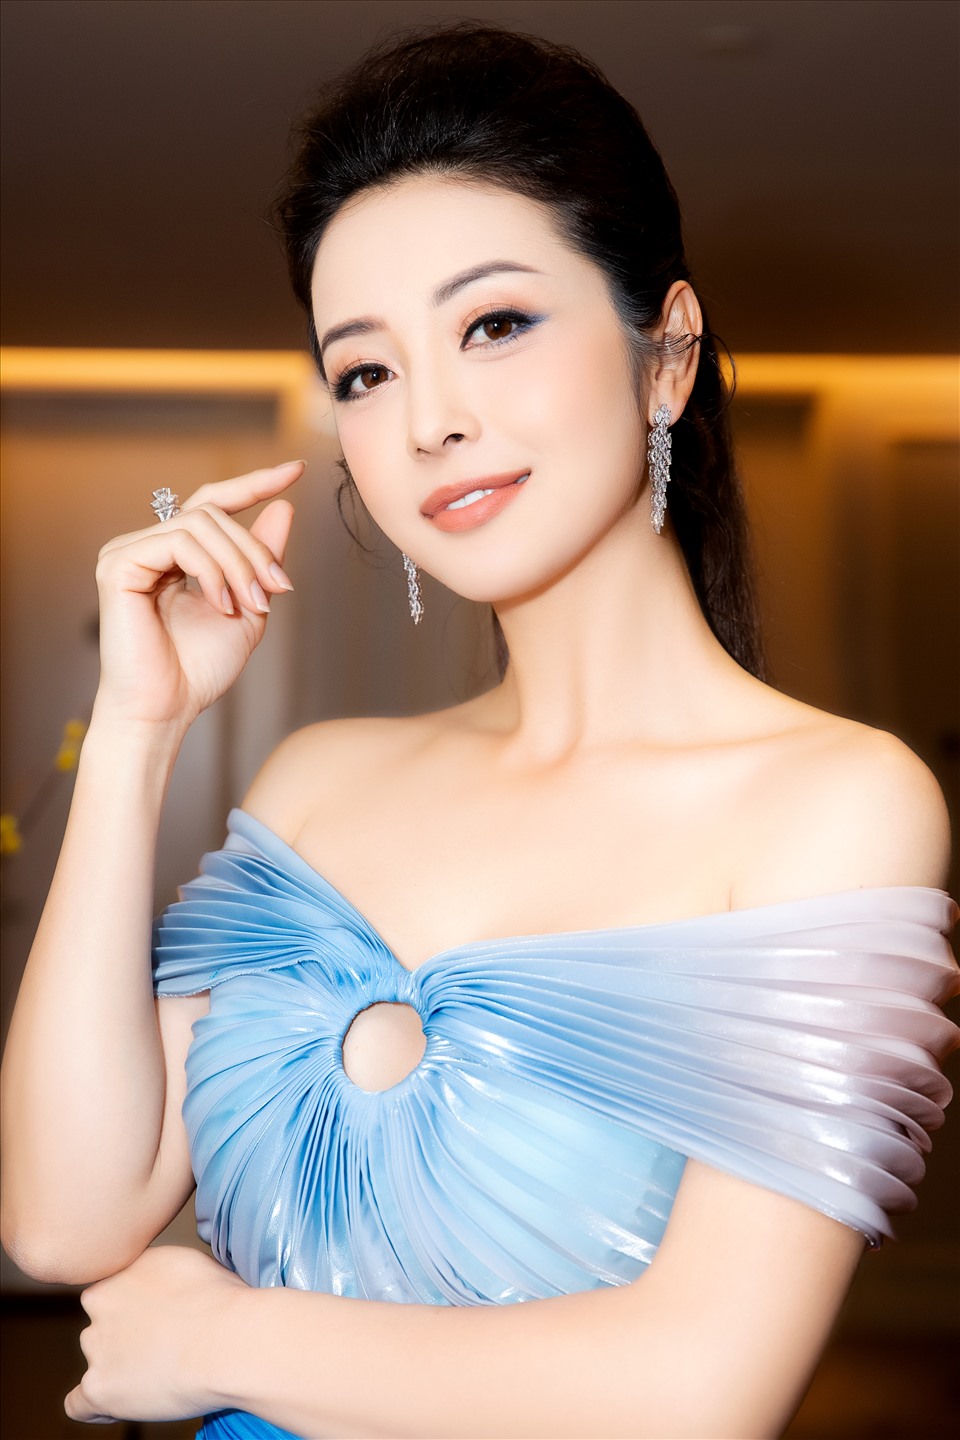 Tính đến thời điểm hiện tại, Jennifer Phạm đã có hơn 13 năm gia nhập showbiz Việt. Trong suốt thời gian tạo dựng hình ảnh cá nhân trong Vbiz, Hoa hậu châu Á tại Mỹ 2006 luôn được đánh giá cao về gu thẩm mỹ, cũng như đời tư được ngưỡng mộ.